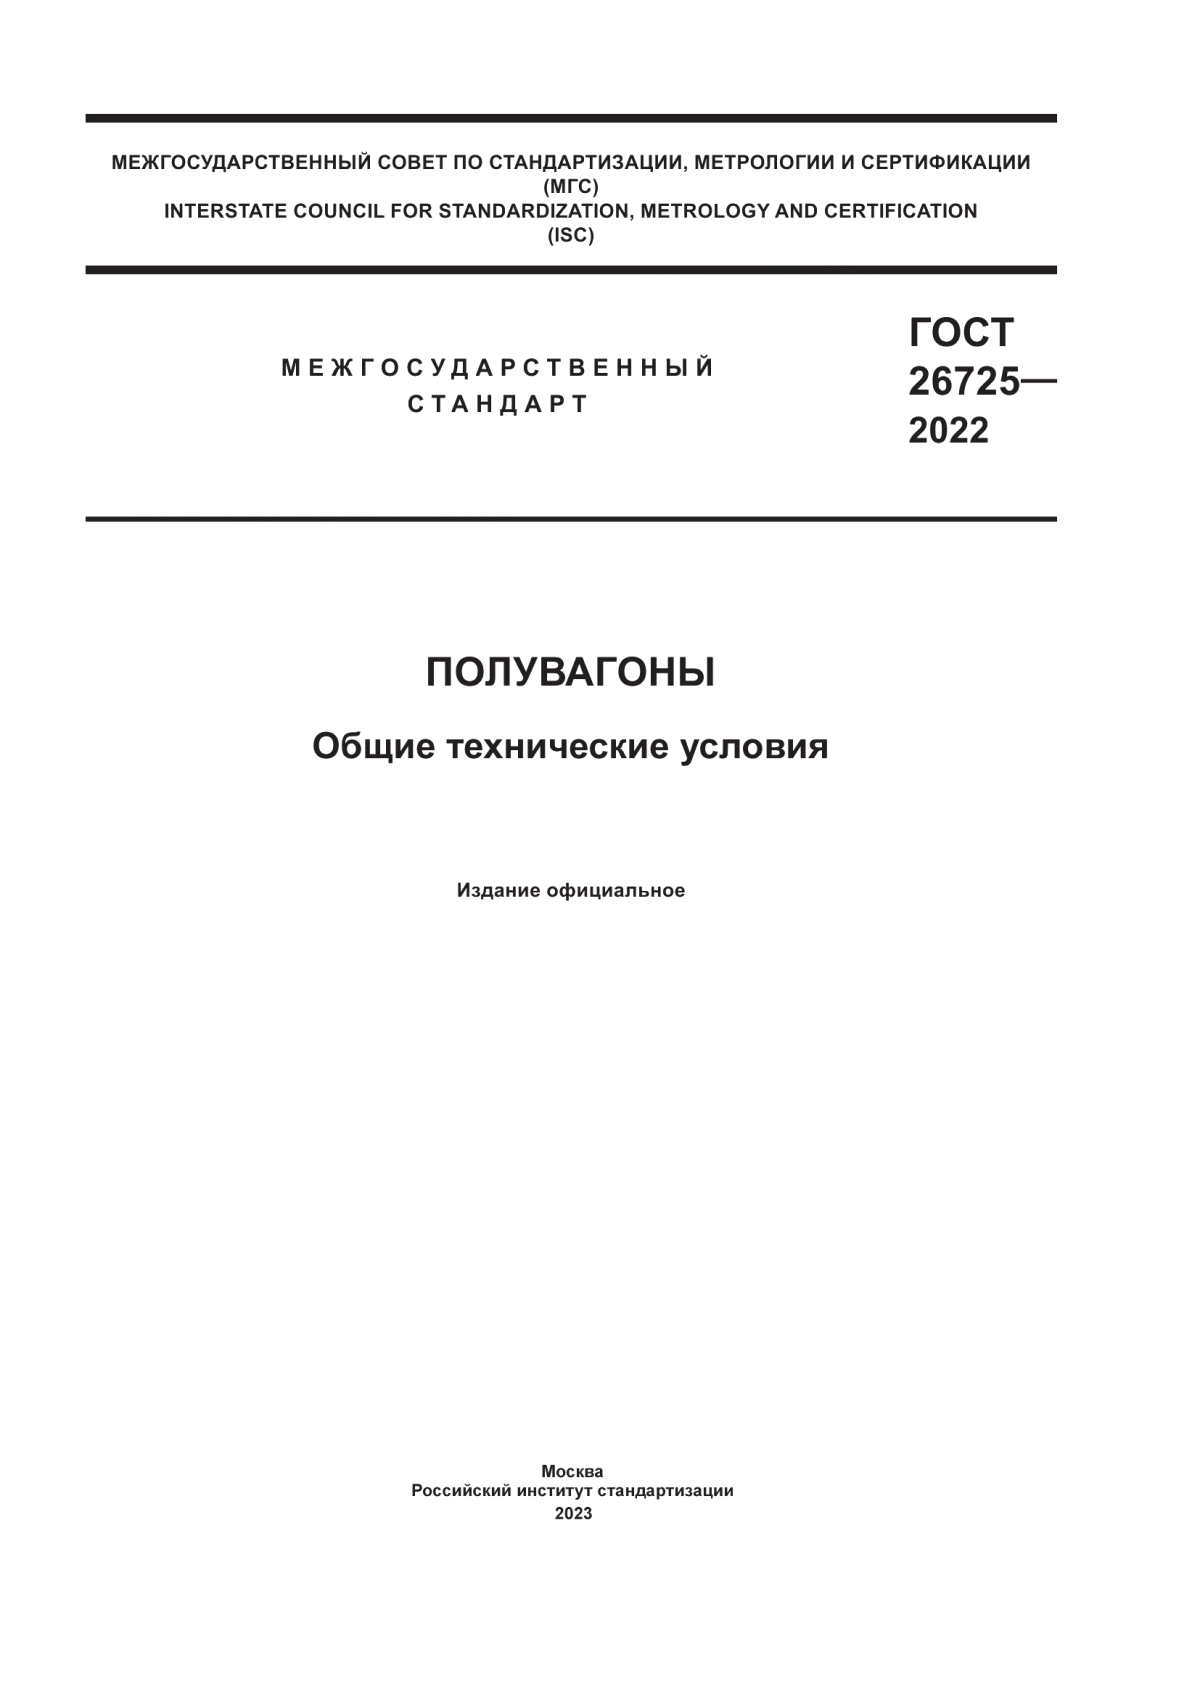 ГОСТ 26725-2022 Полувагоны. Общие технические условия